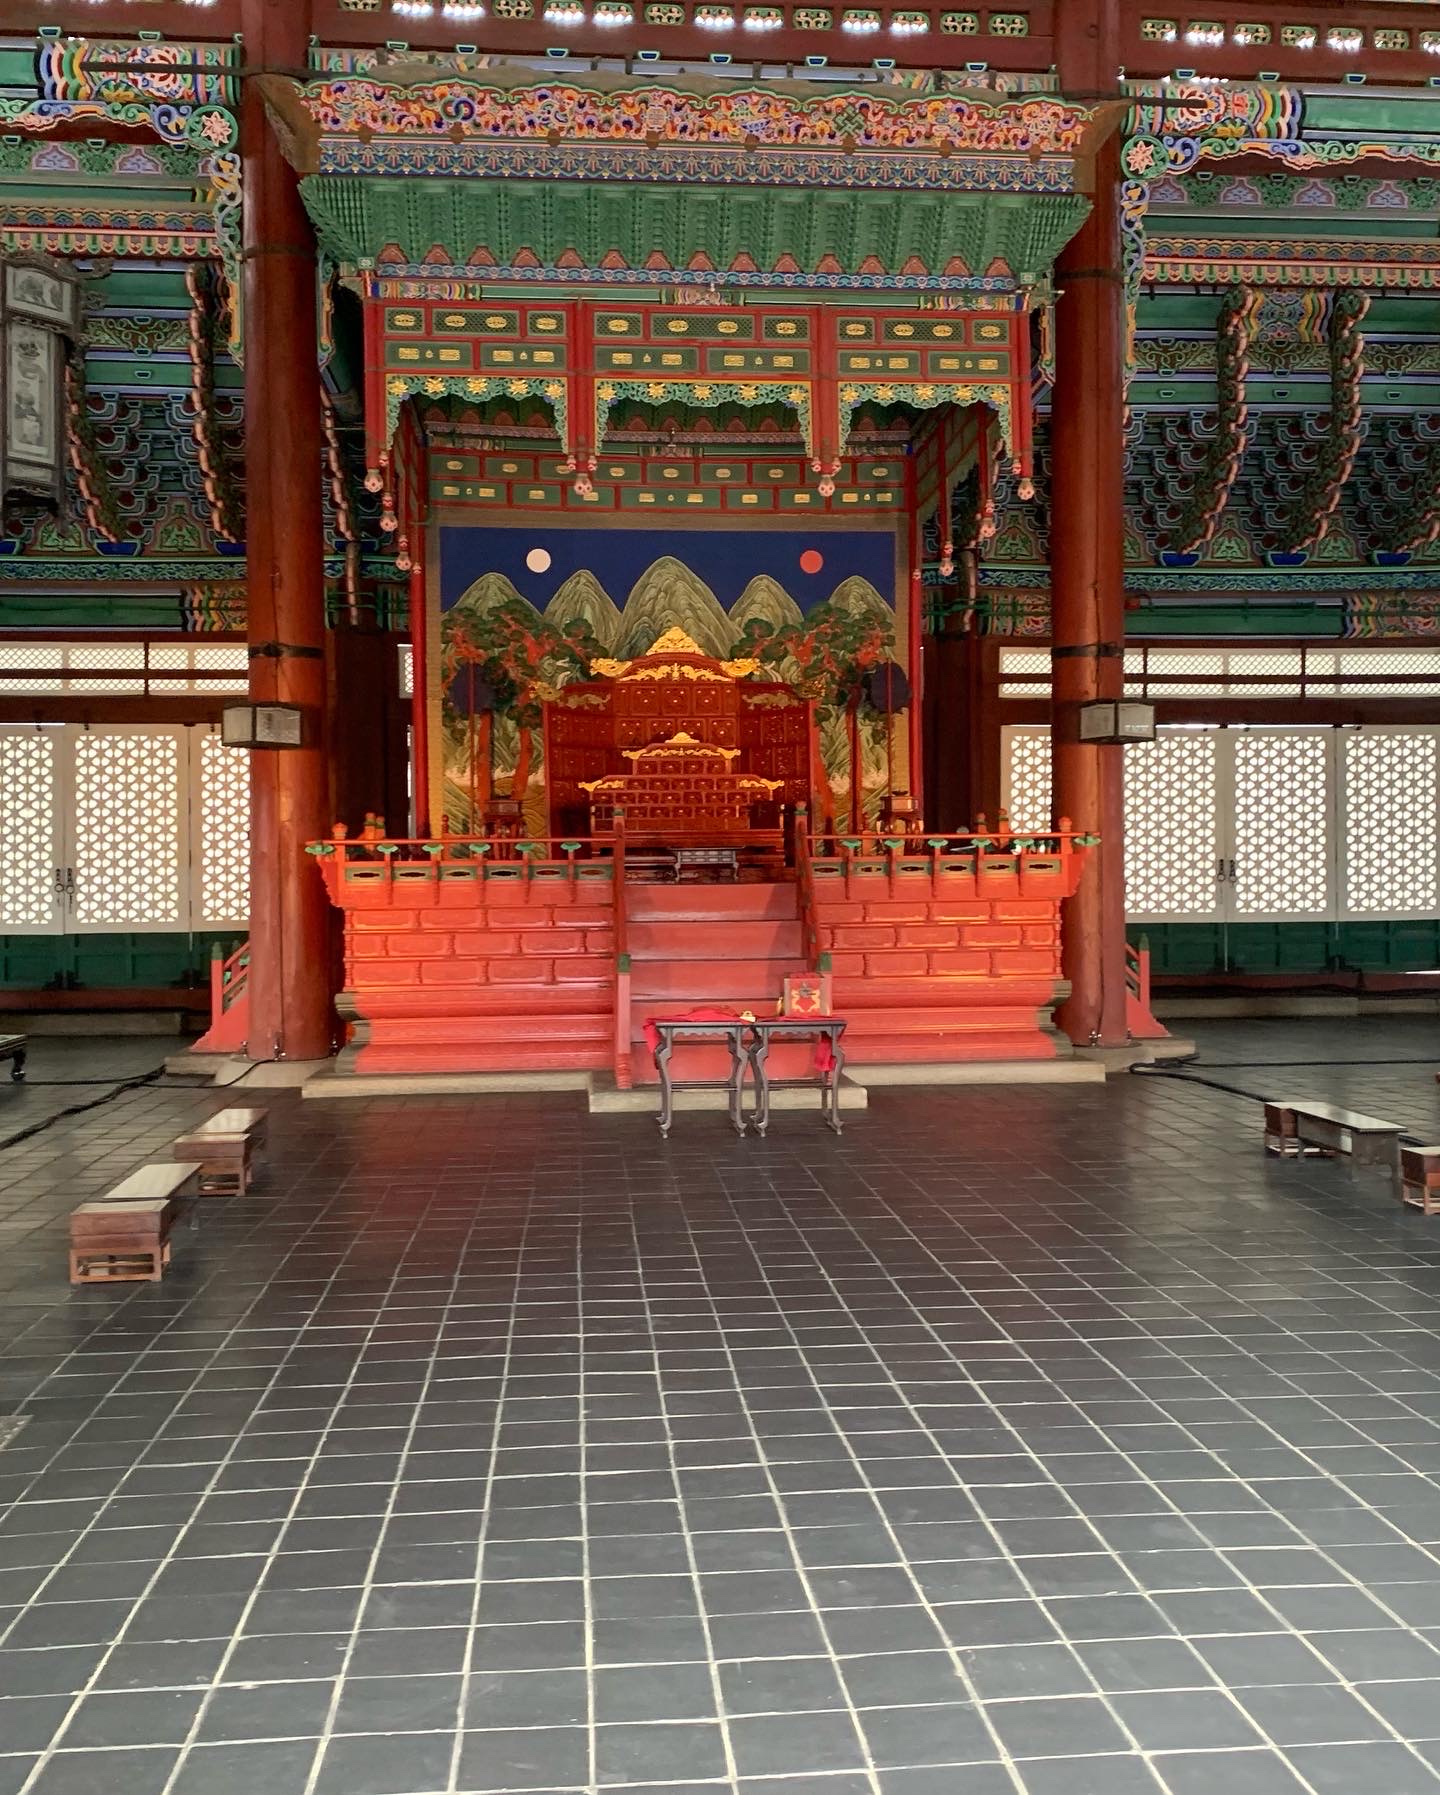 Visiting Gyeongbokgung Palace